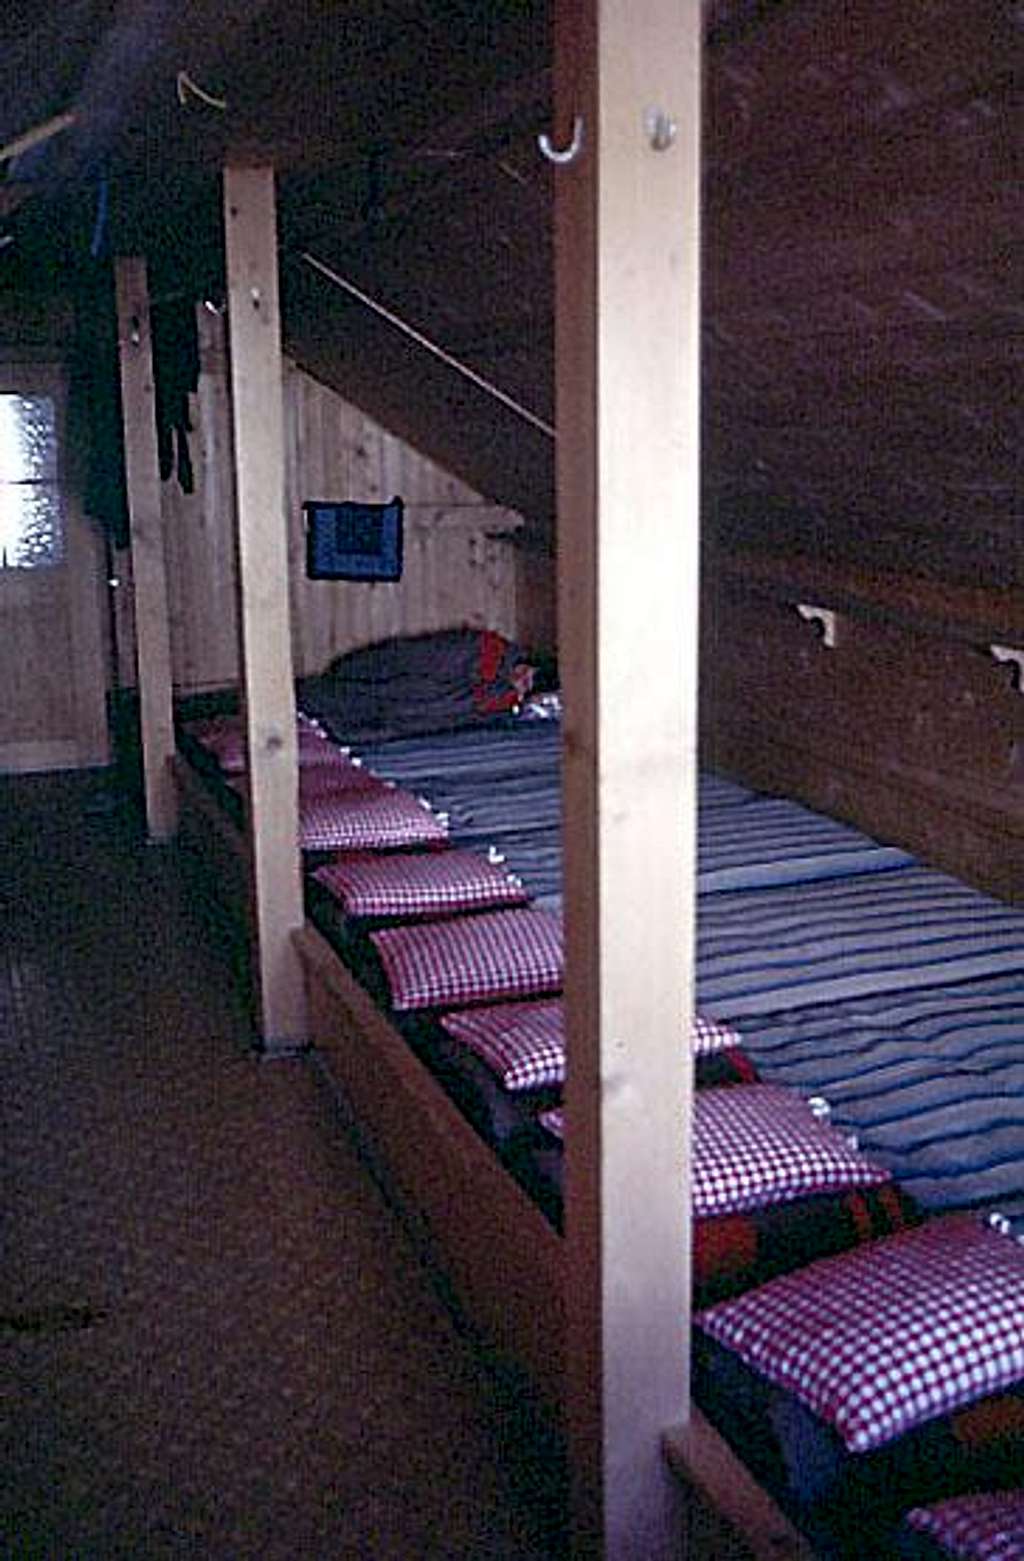 Sleeping accomodations in the Blümlisalphütte